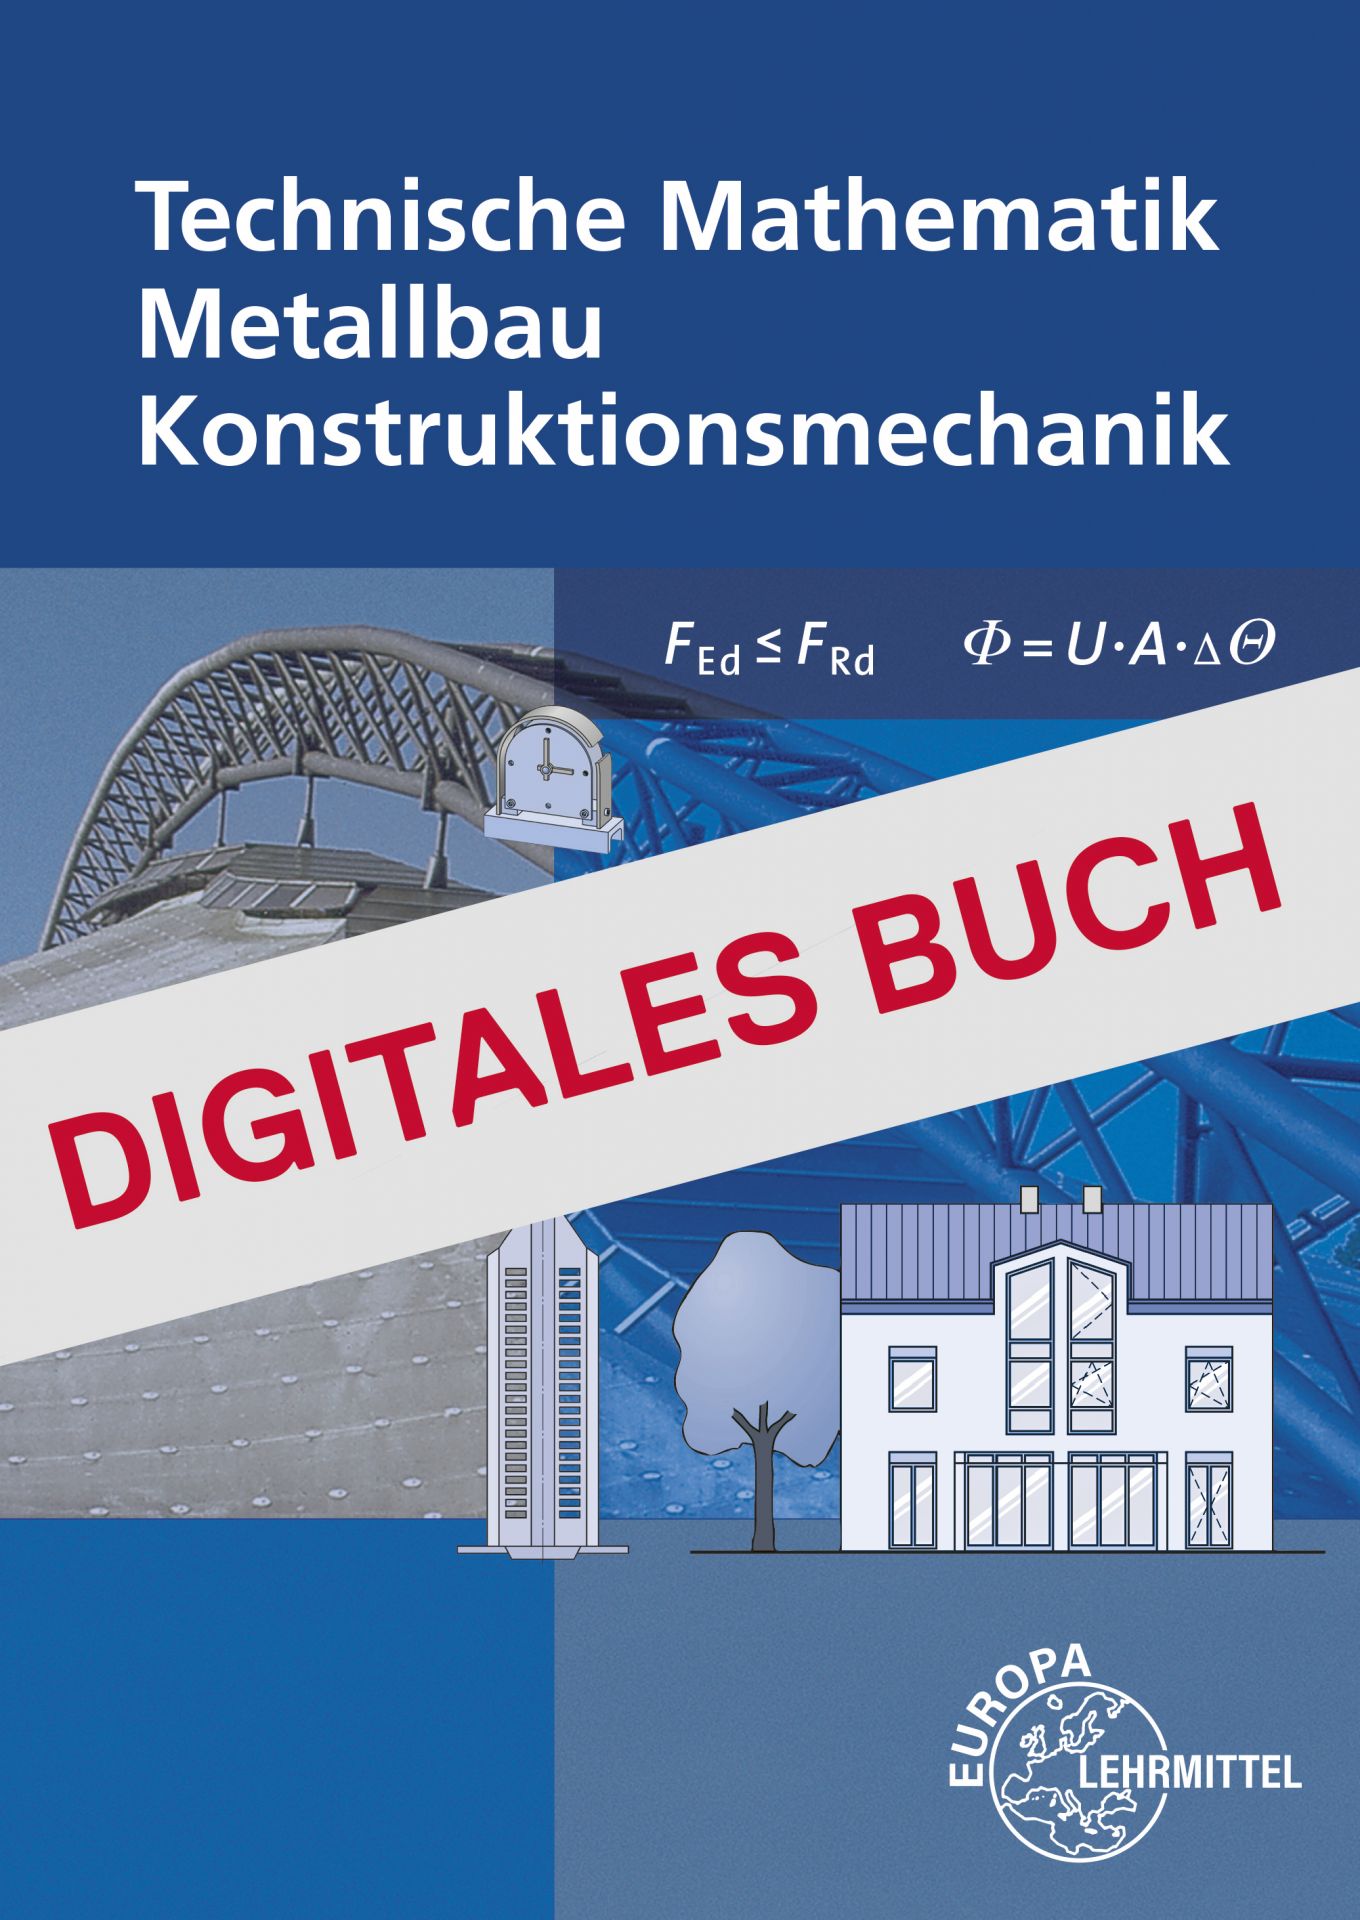 Technische Mathematik Metallbau mit Formeln - Digitales Buch